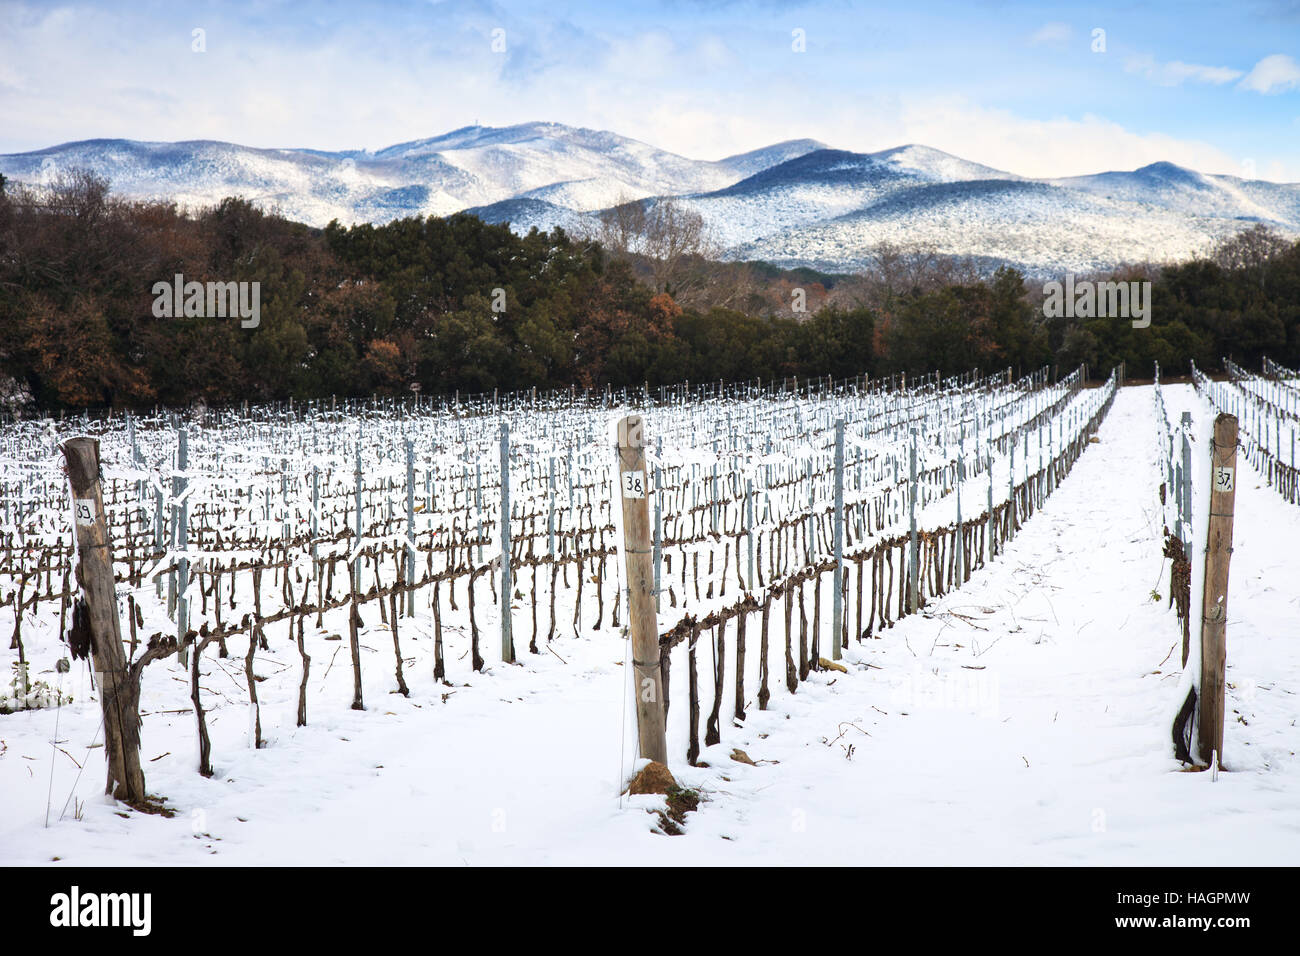 Weinberge-Zeilen im Winter von Schnee bedeckt. Chianti-Landschaft, Florenz, Toskana, Italien Stockfoto